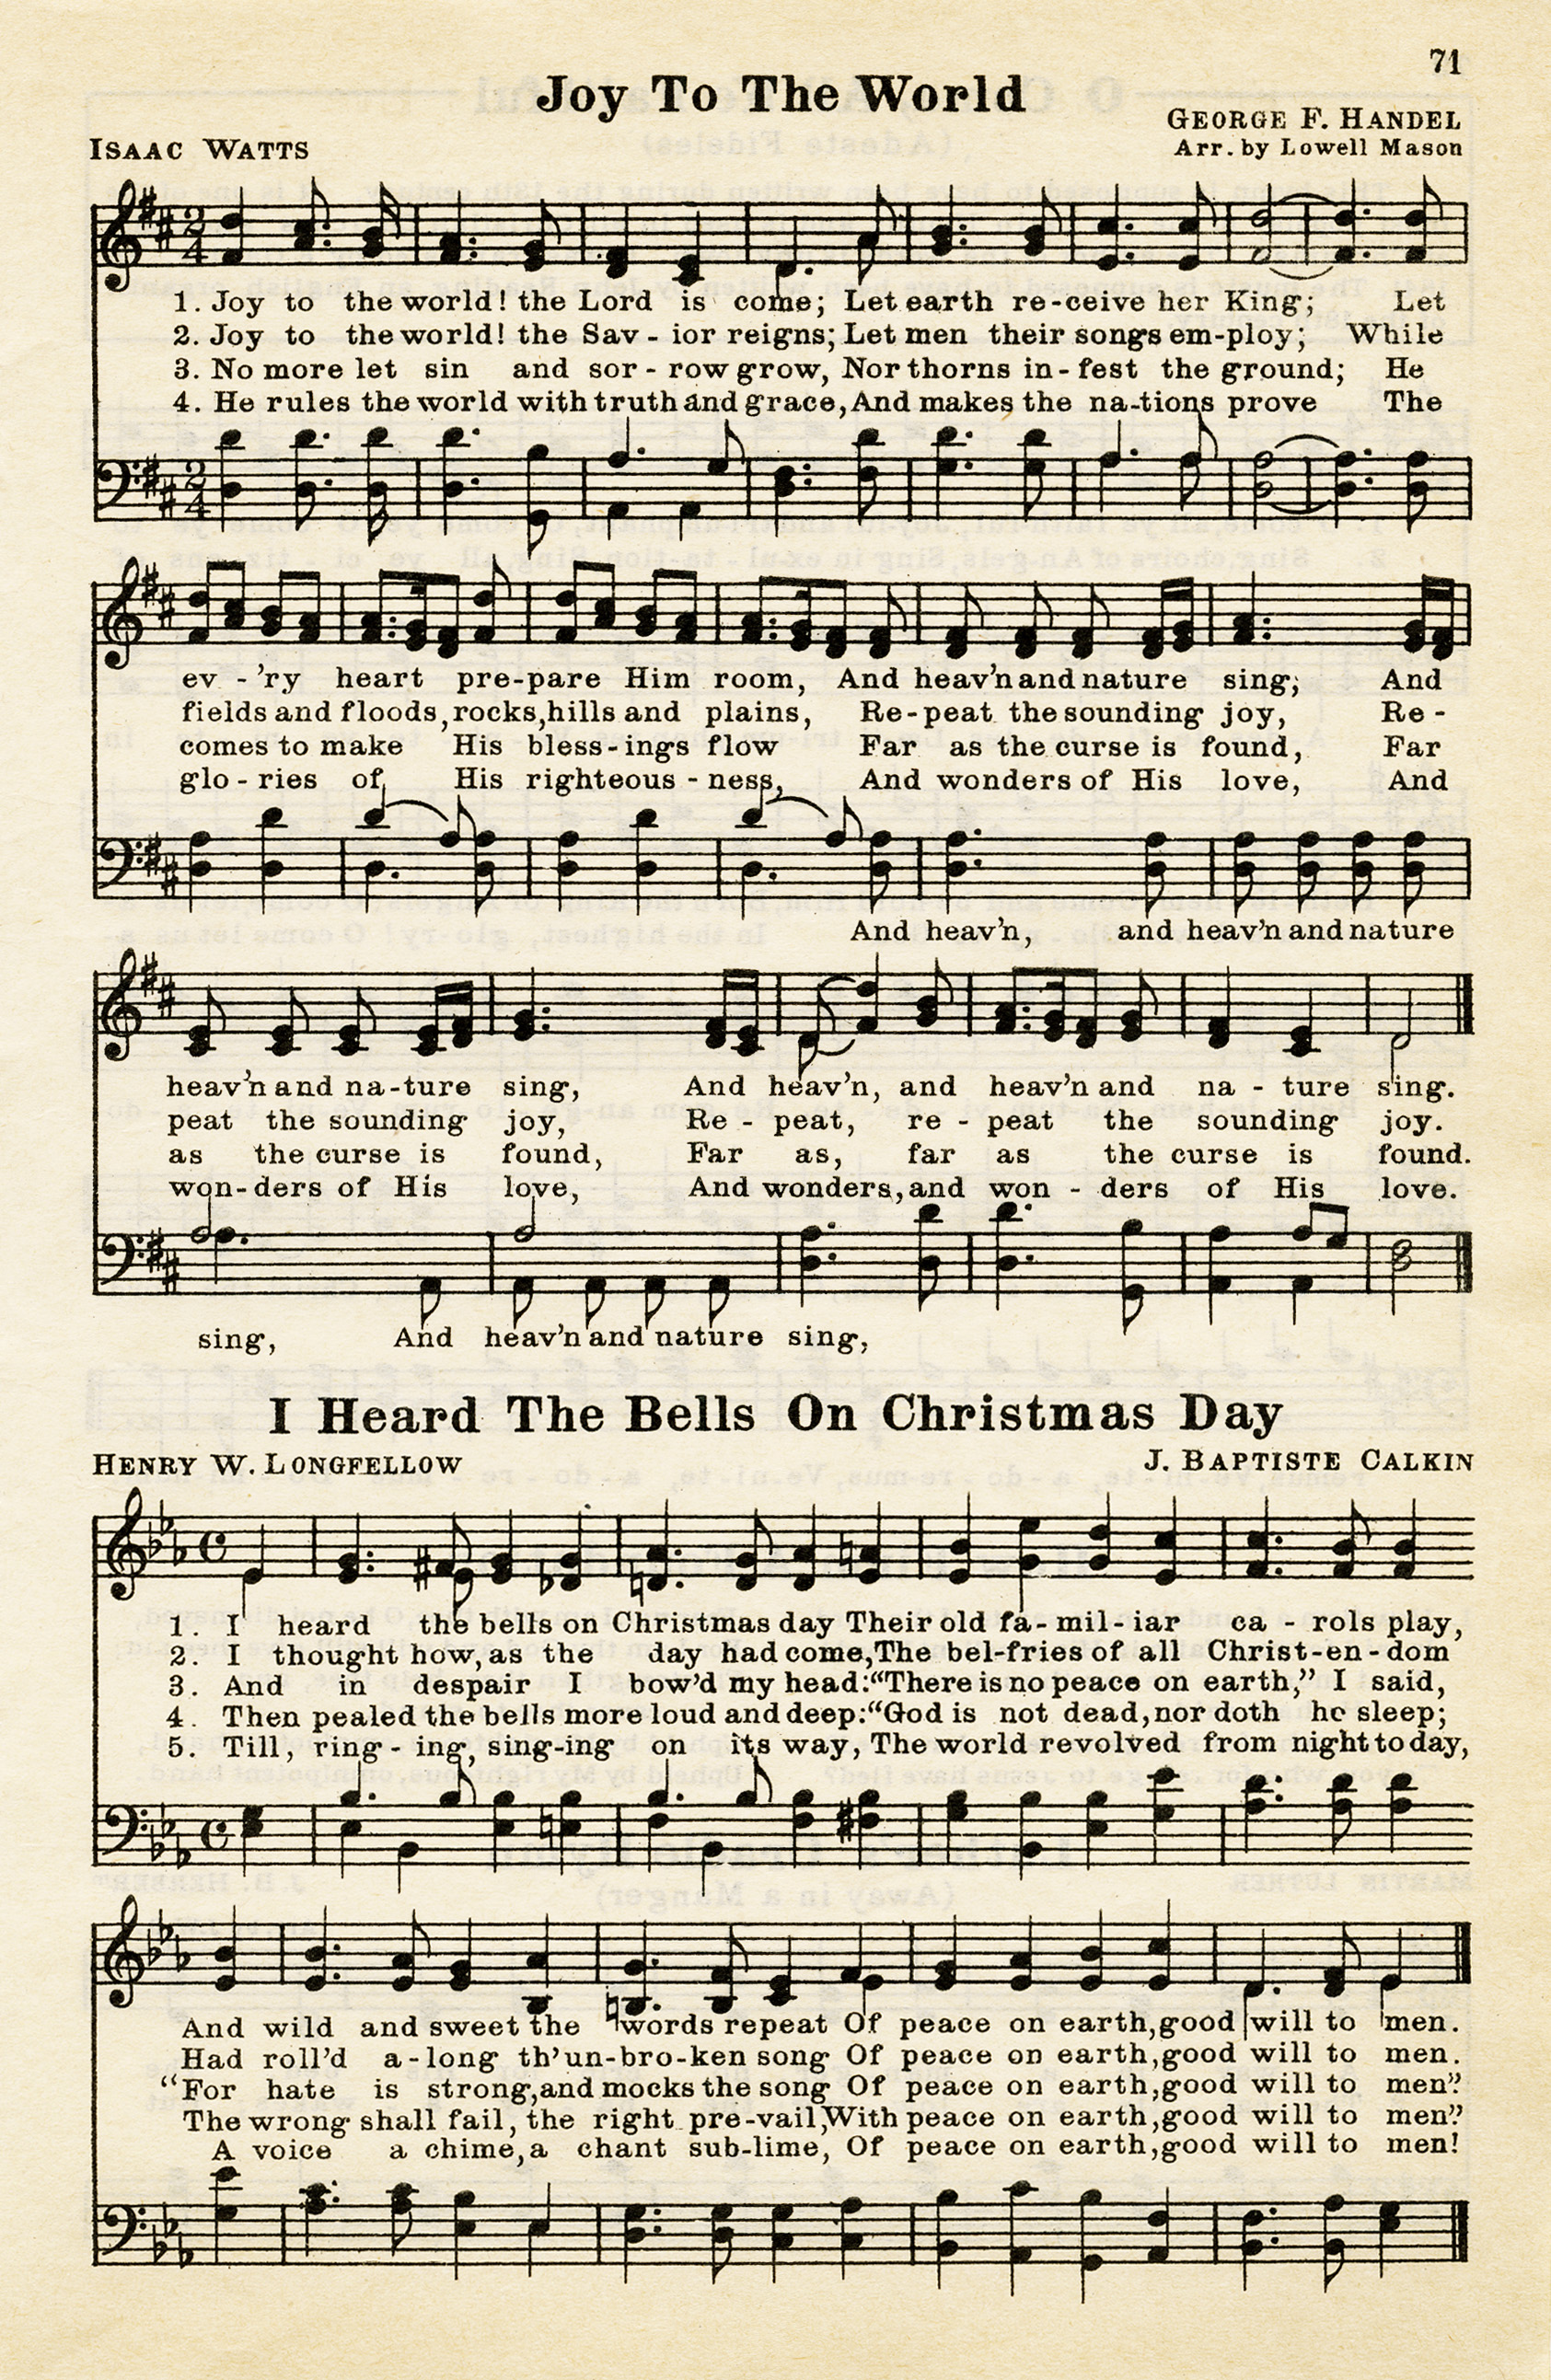 Free Vintage Image ~ Christmas Hymns - Old Design Shop Blog